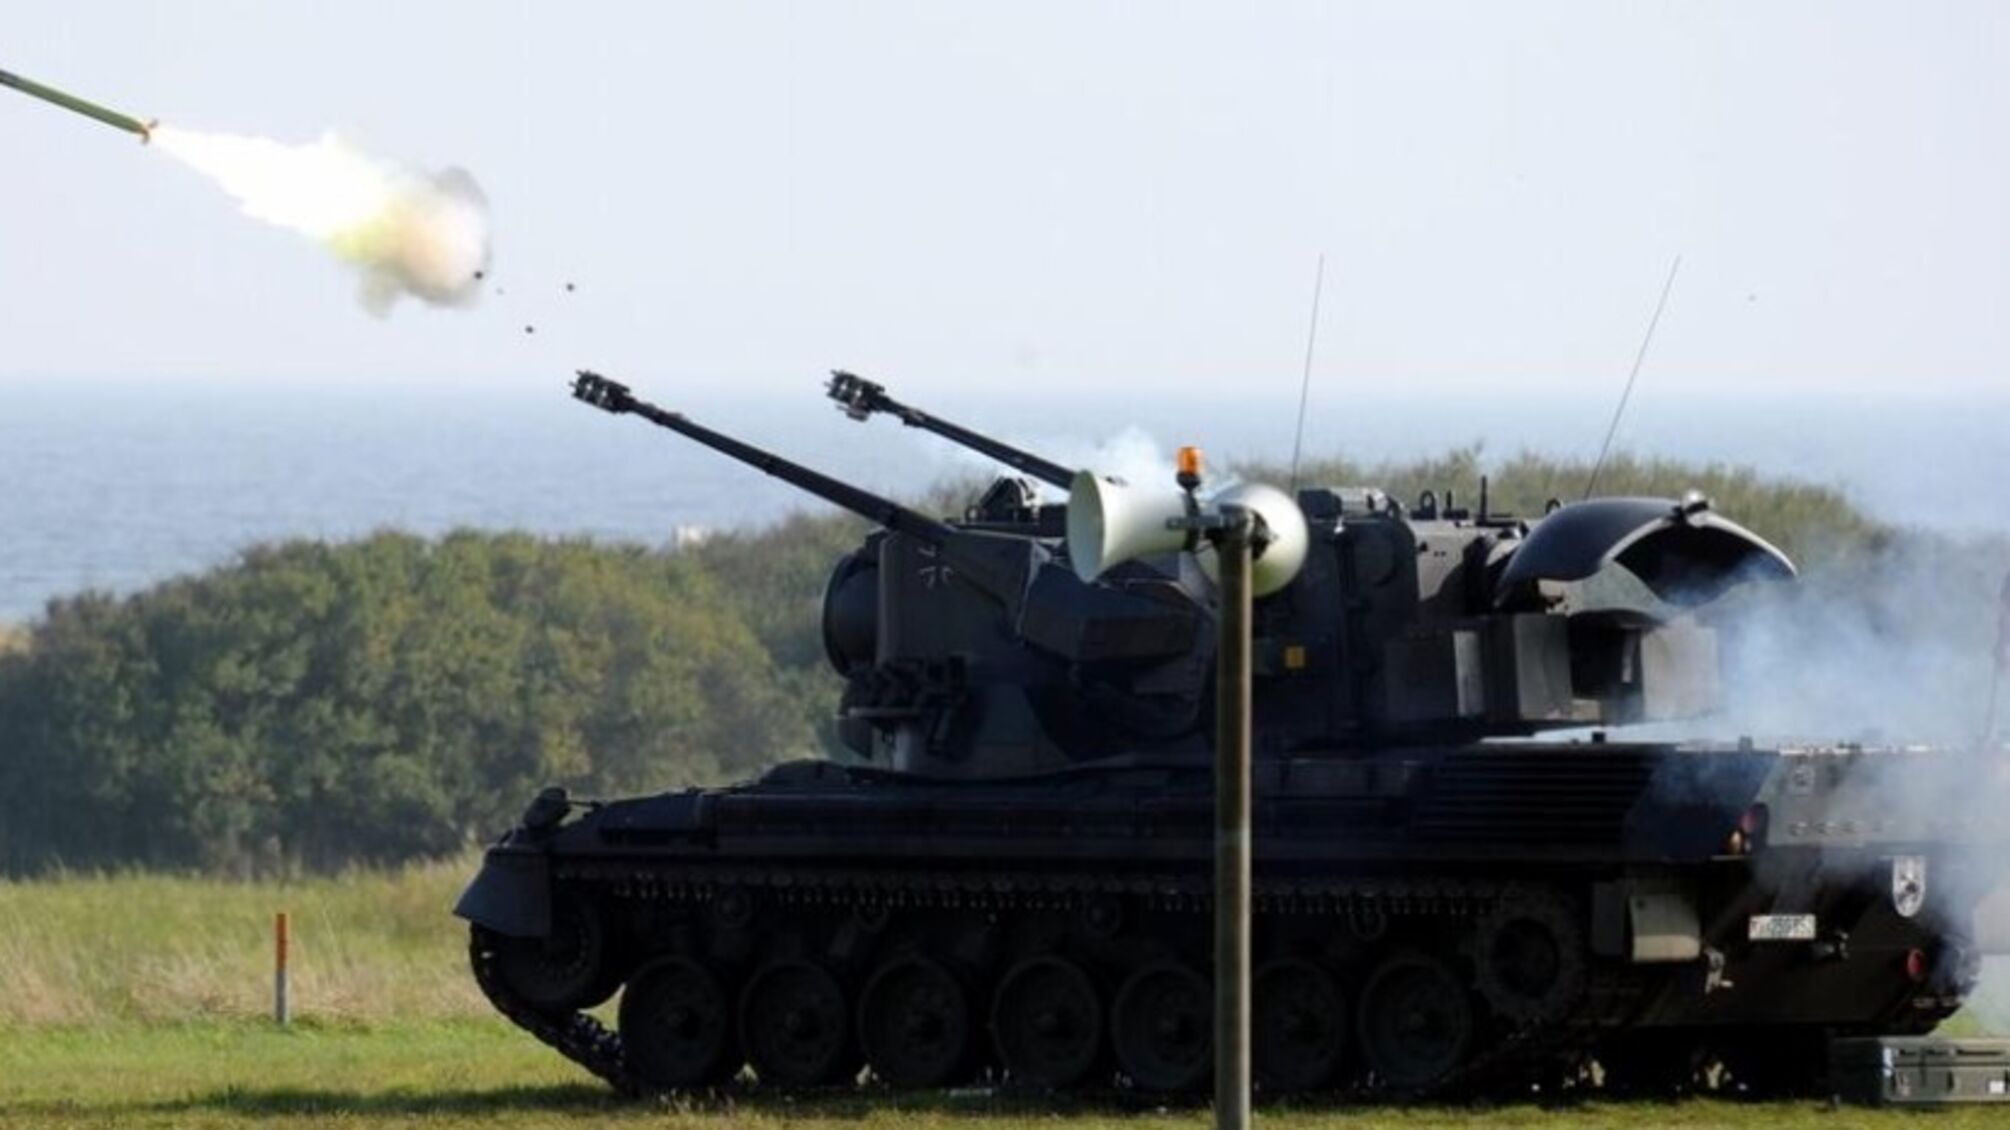 Германия передала ВСУ первый контрбатарейный радар Cobra и еще пять зениток Gepard